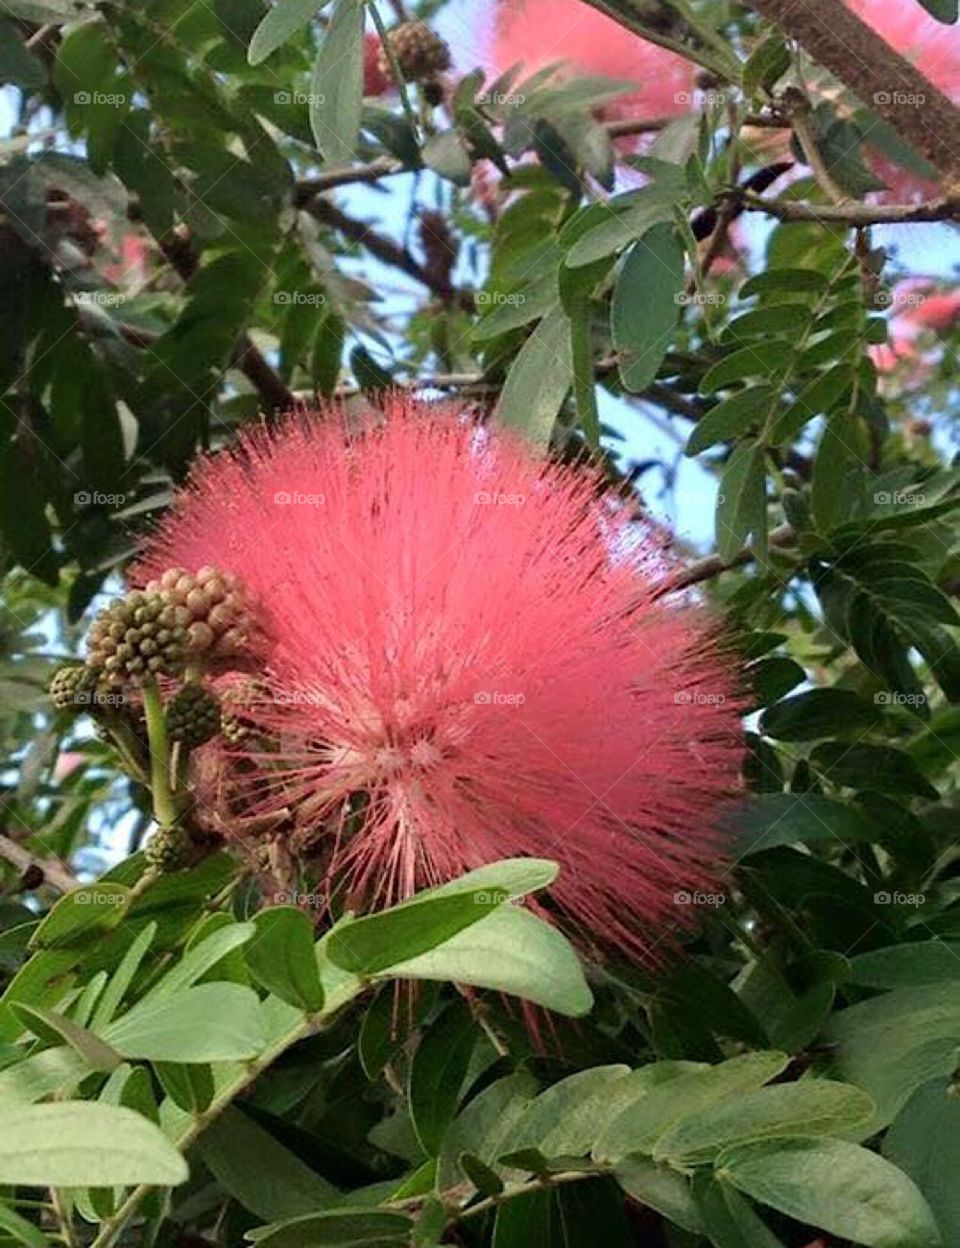 Beautiful Pom Pom Flower in tropical Florida.